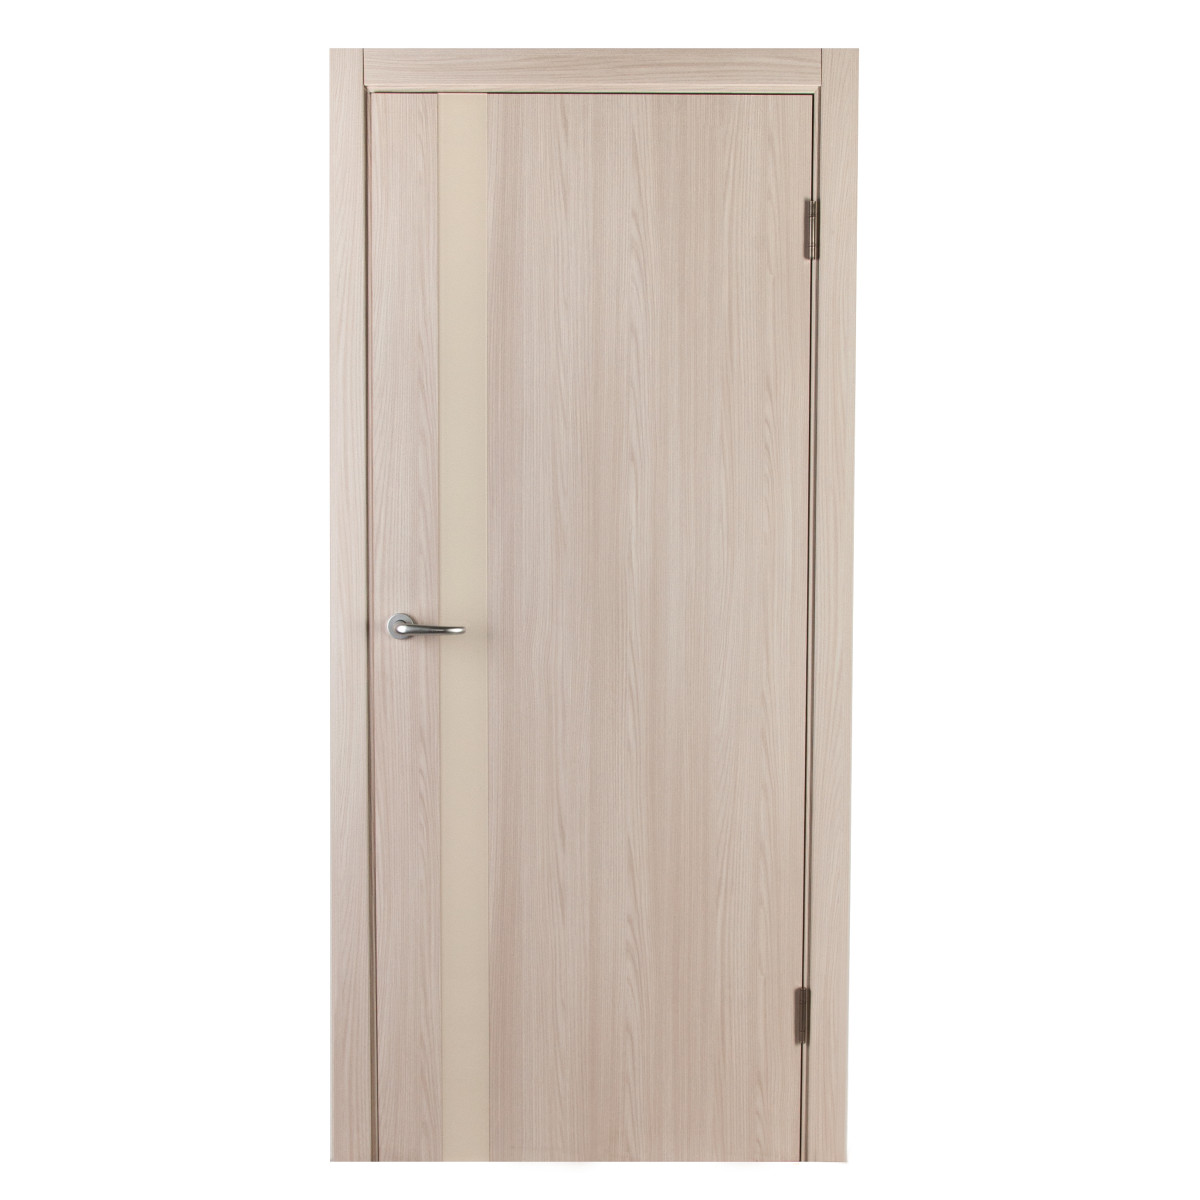 Дверь межкомнатная глухая с замком и петлями в комплекте Мирра 70x200 см, Hardflex, цвет ясень бора